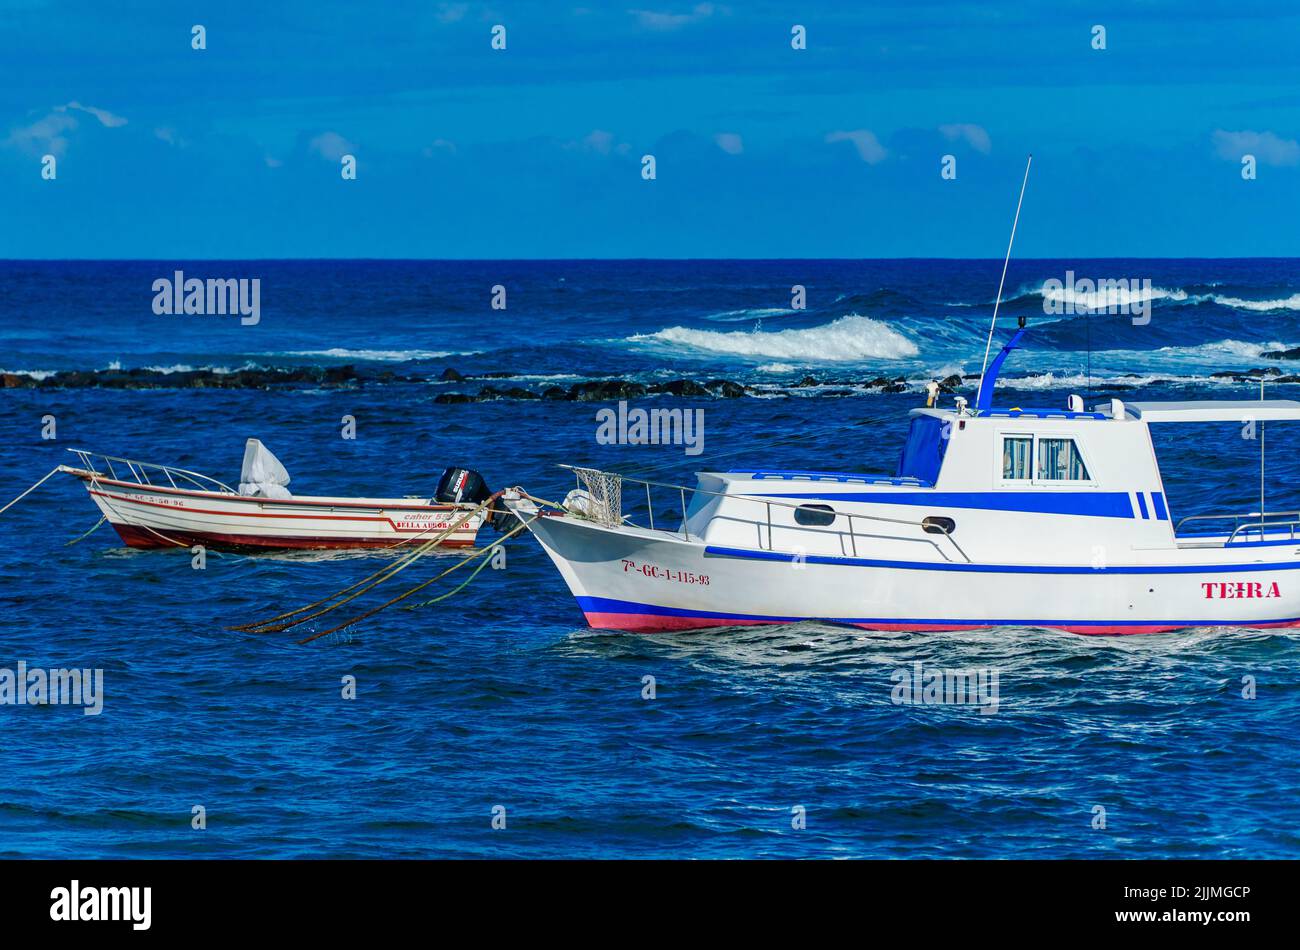 Une belle photo de quelques bateaux dans l'océan Atlantique Banque D'Images